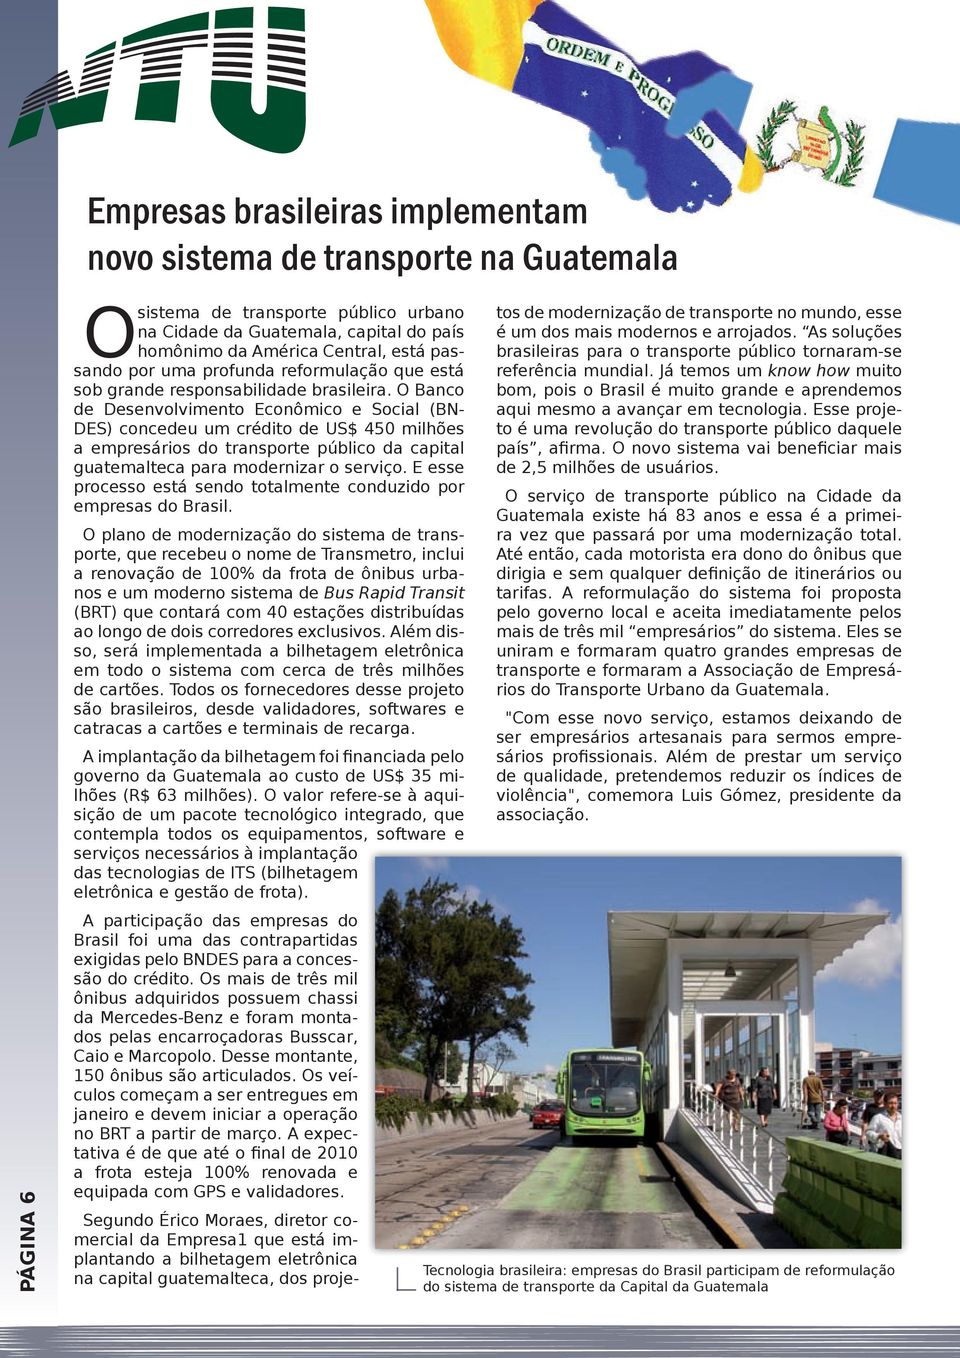 O Banco de Desenvolvimento Econômico e Social (BN- DES) concedeu um crédito de US$ 450 milhões a empresários do transporte público da capital guatemalteca para modernizar o serviço.